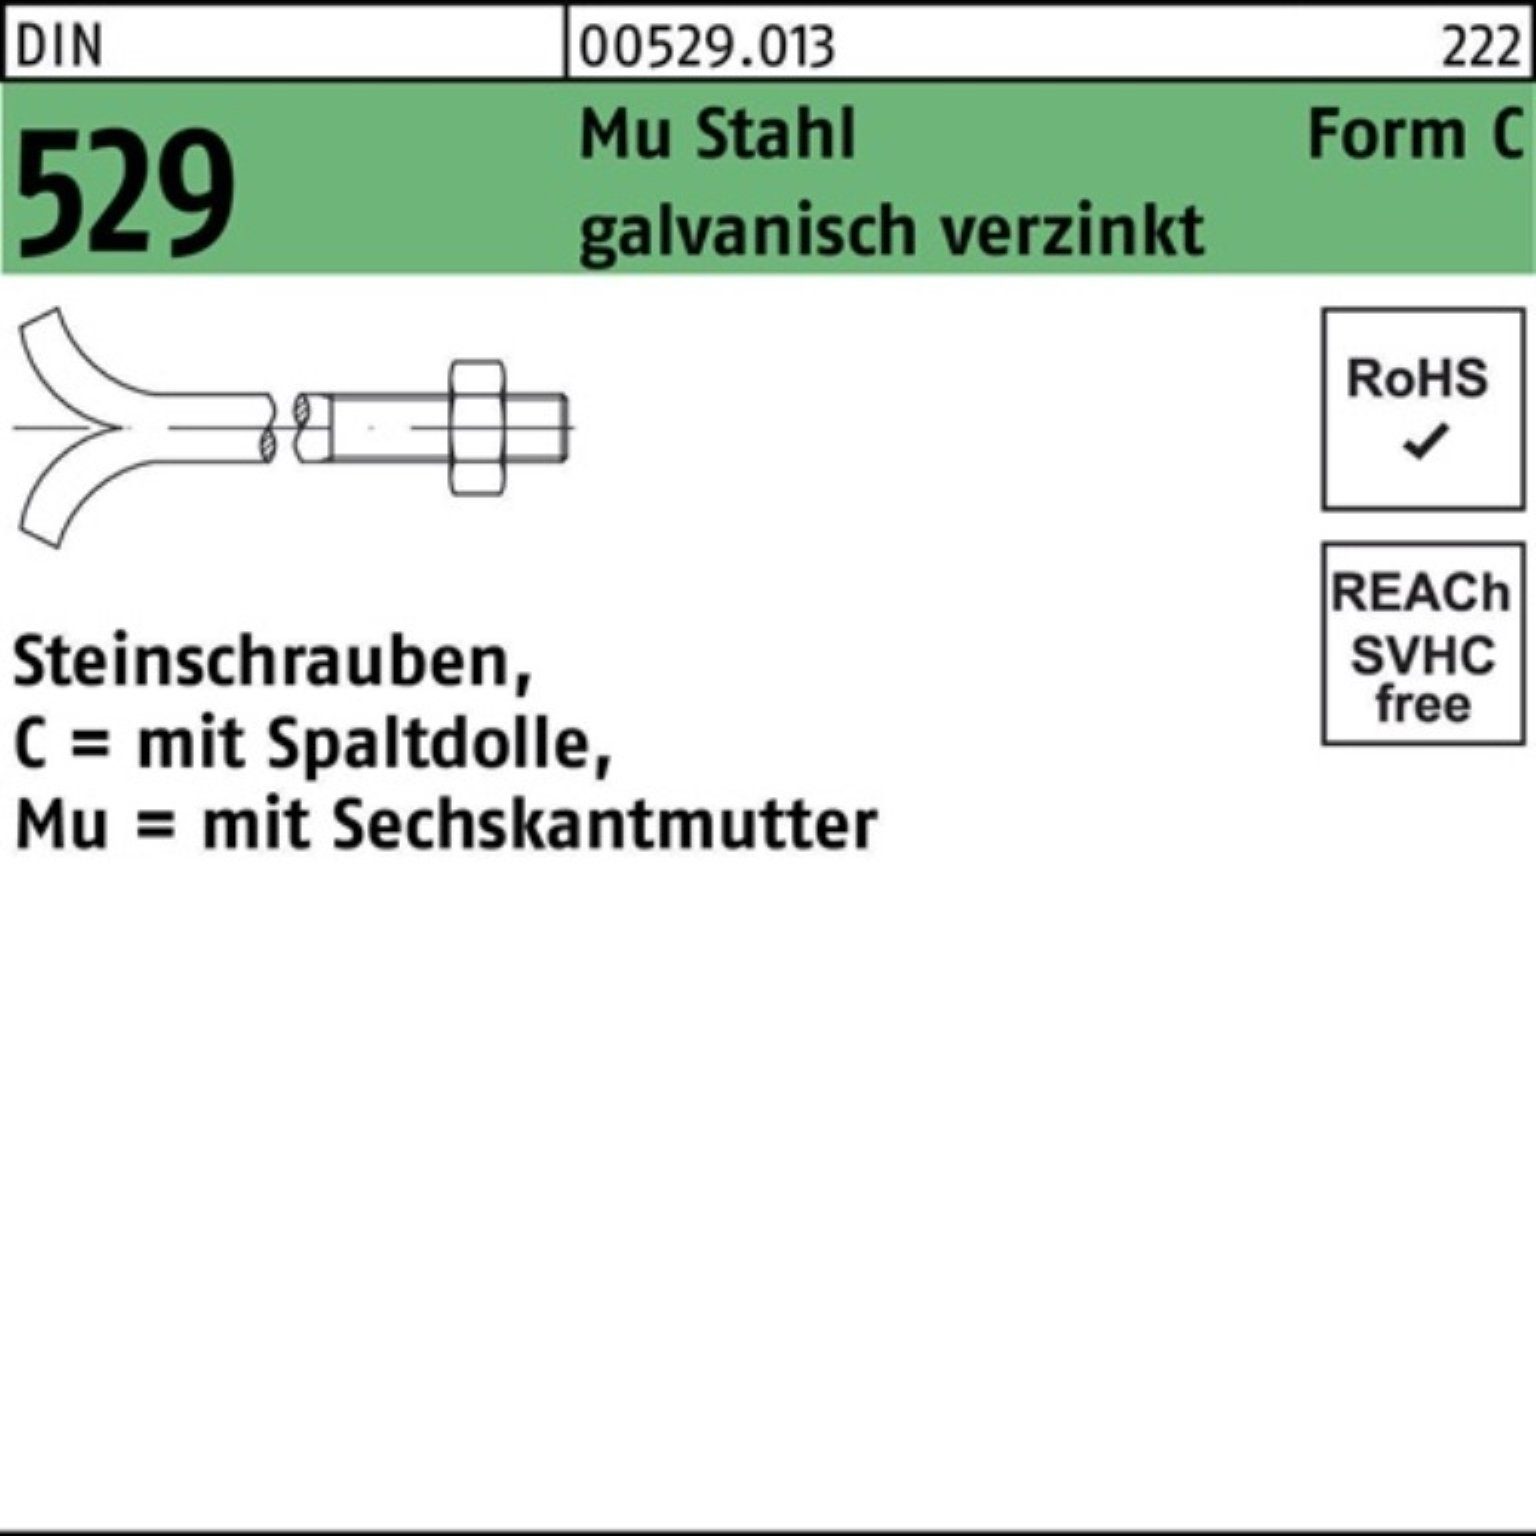 Pack 10x120 Spaltdolle/6-ktmutter 3. 100er CM DIN Steinschraube Schraube Mu 529 Reyher